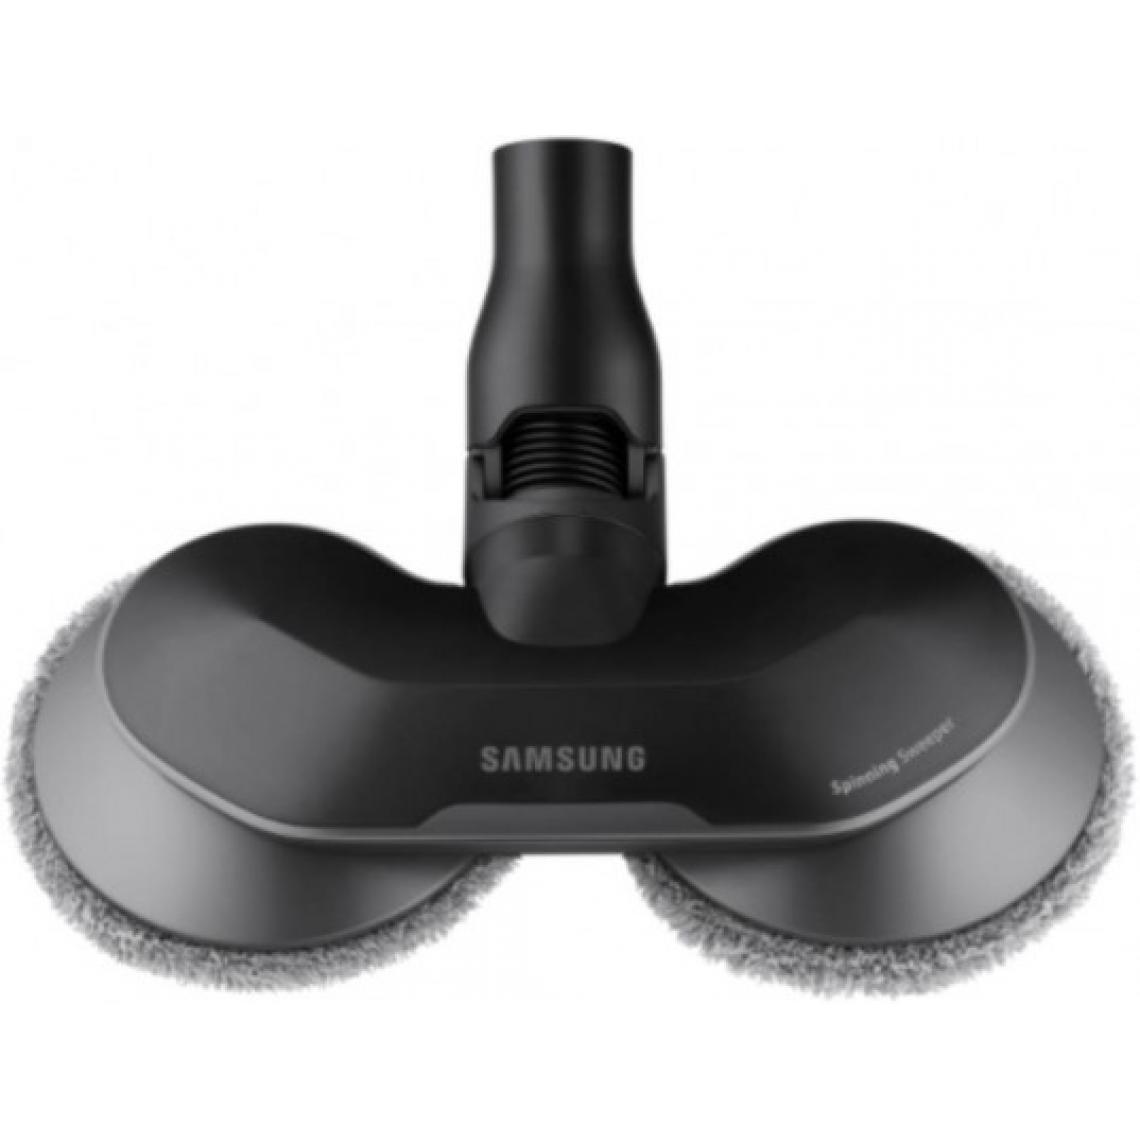 Samsung - Accessoire aspirateur VCA-WB650 double serpillère motorisée - Accessoire entretien des sols